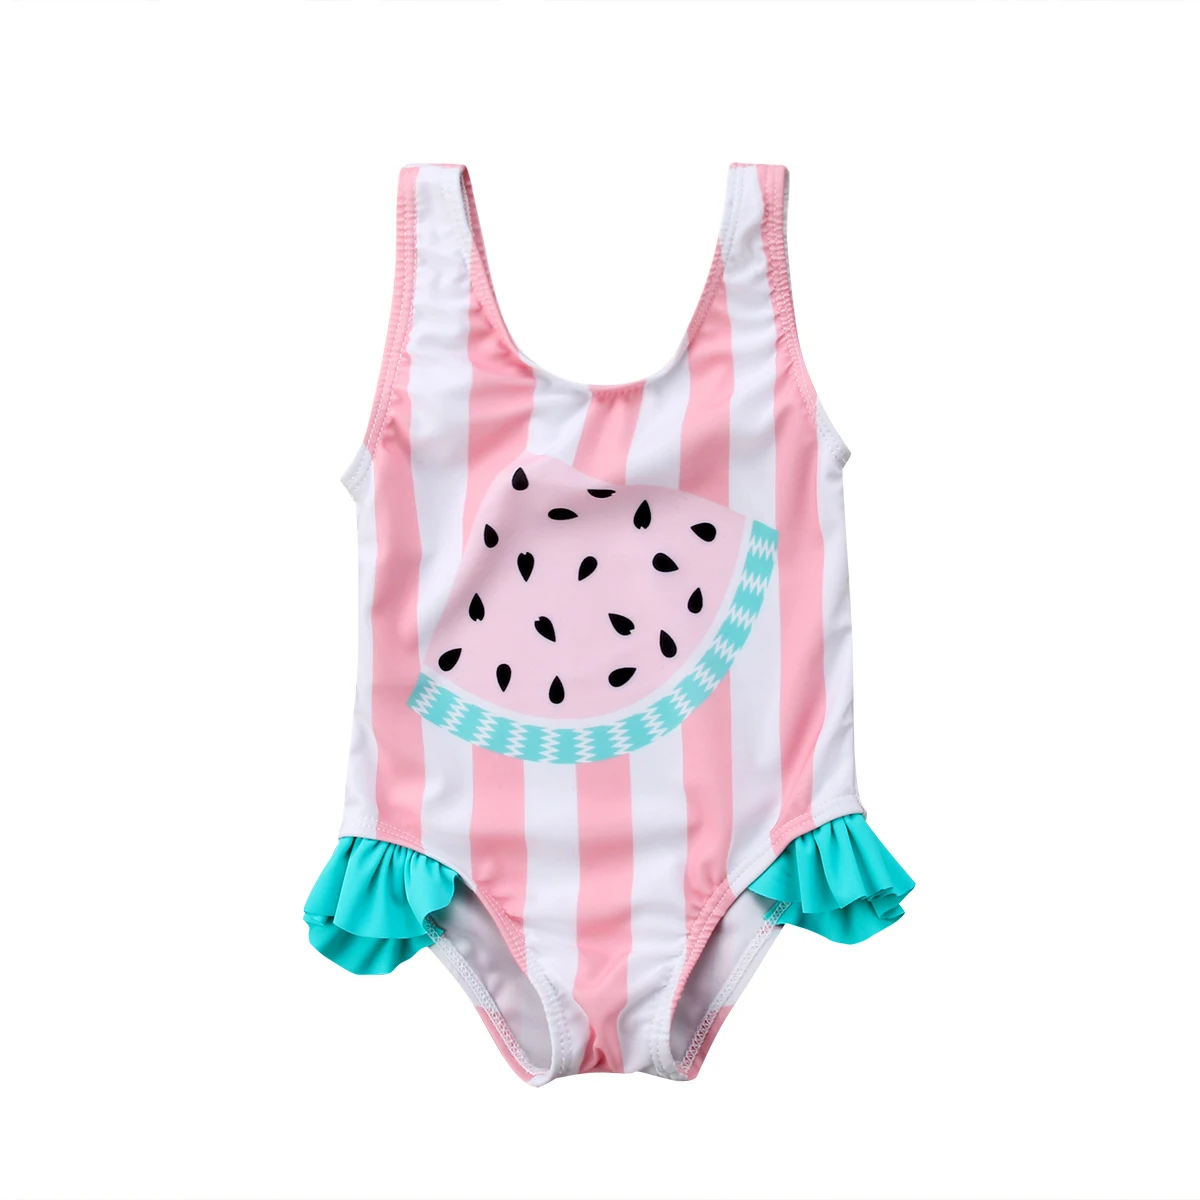 Newborn Kids Baby Girls Watermelon Swimsuit Swimwear Swimming Bikini Beachwear 2020 HOT SALE